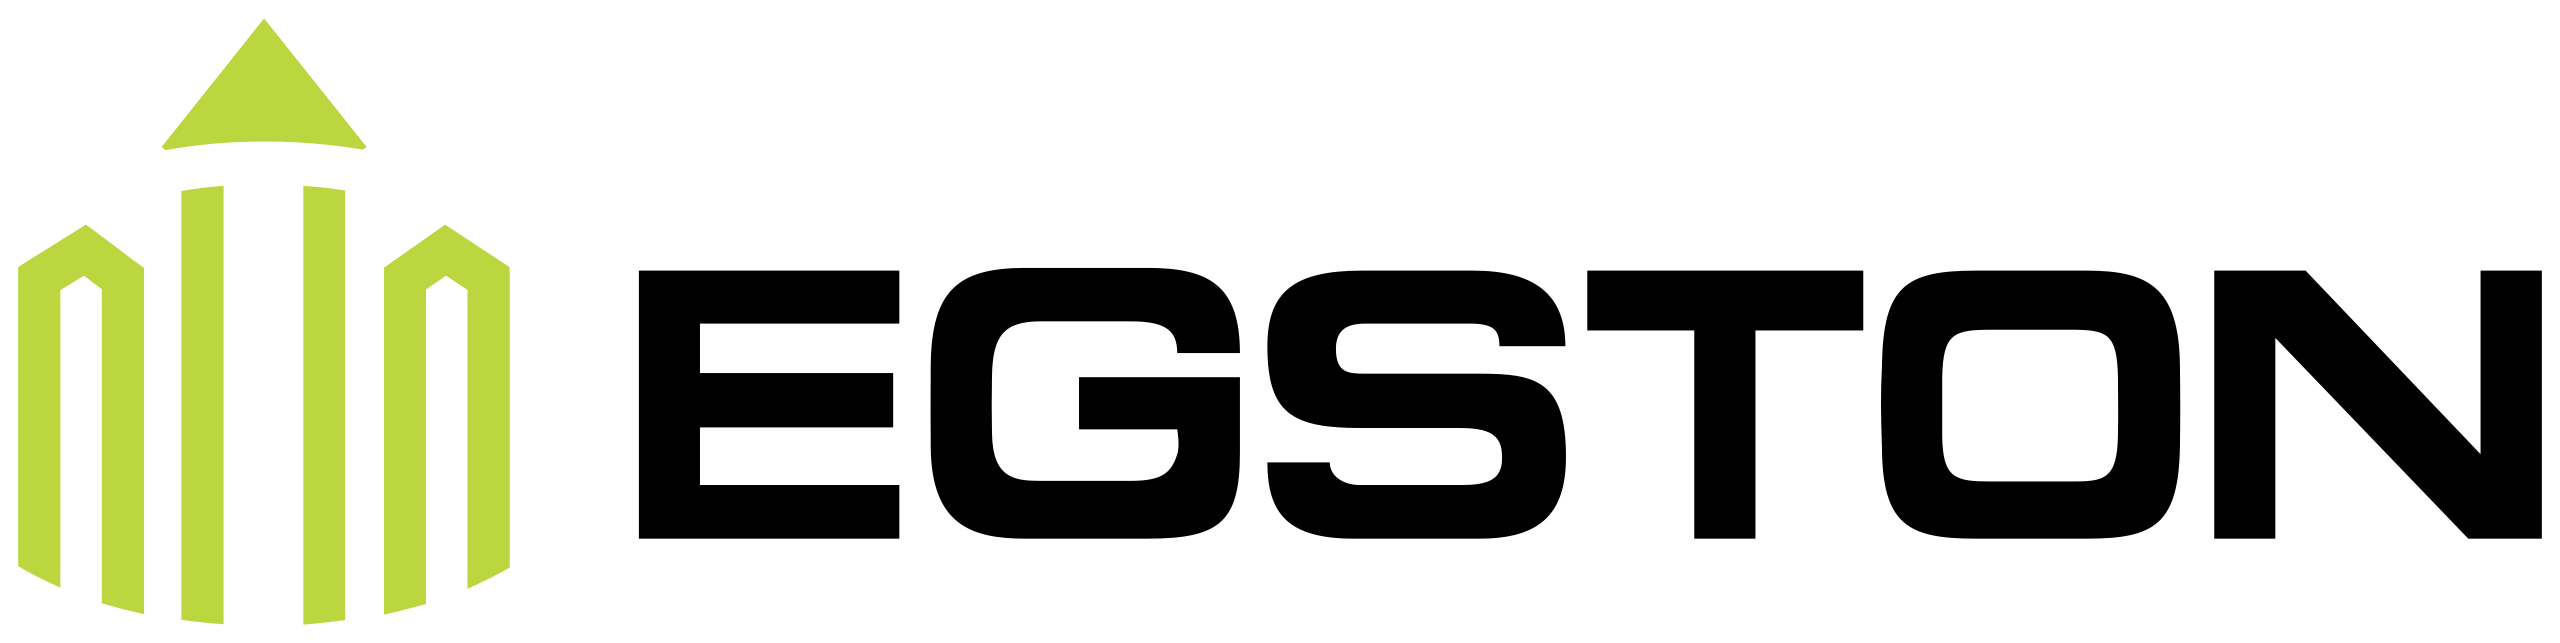 Egston logo.